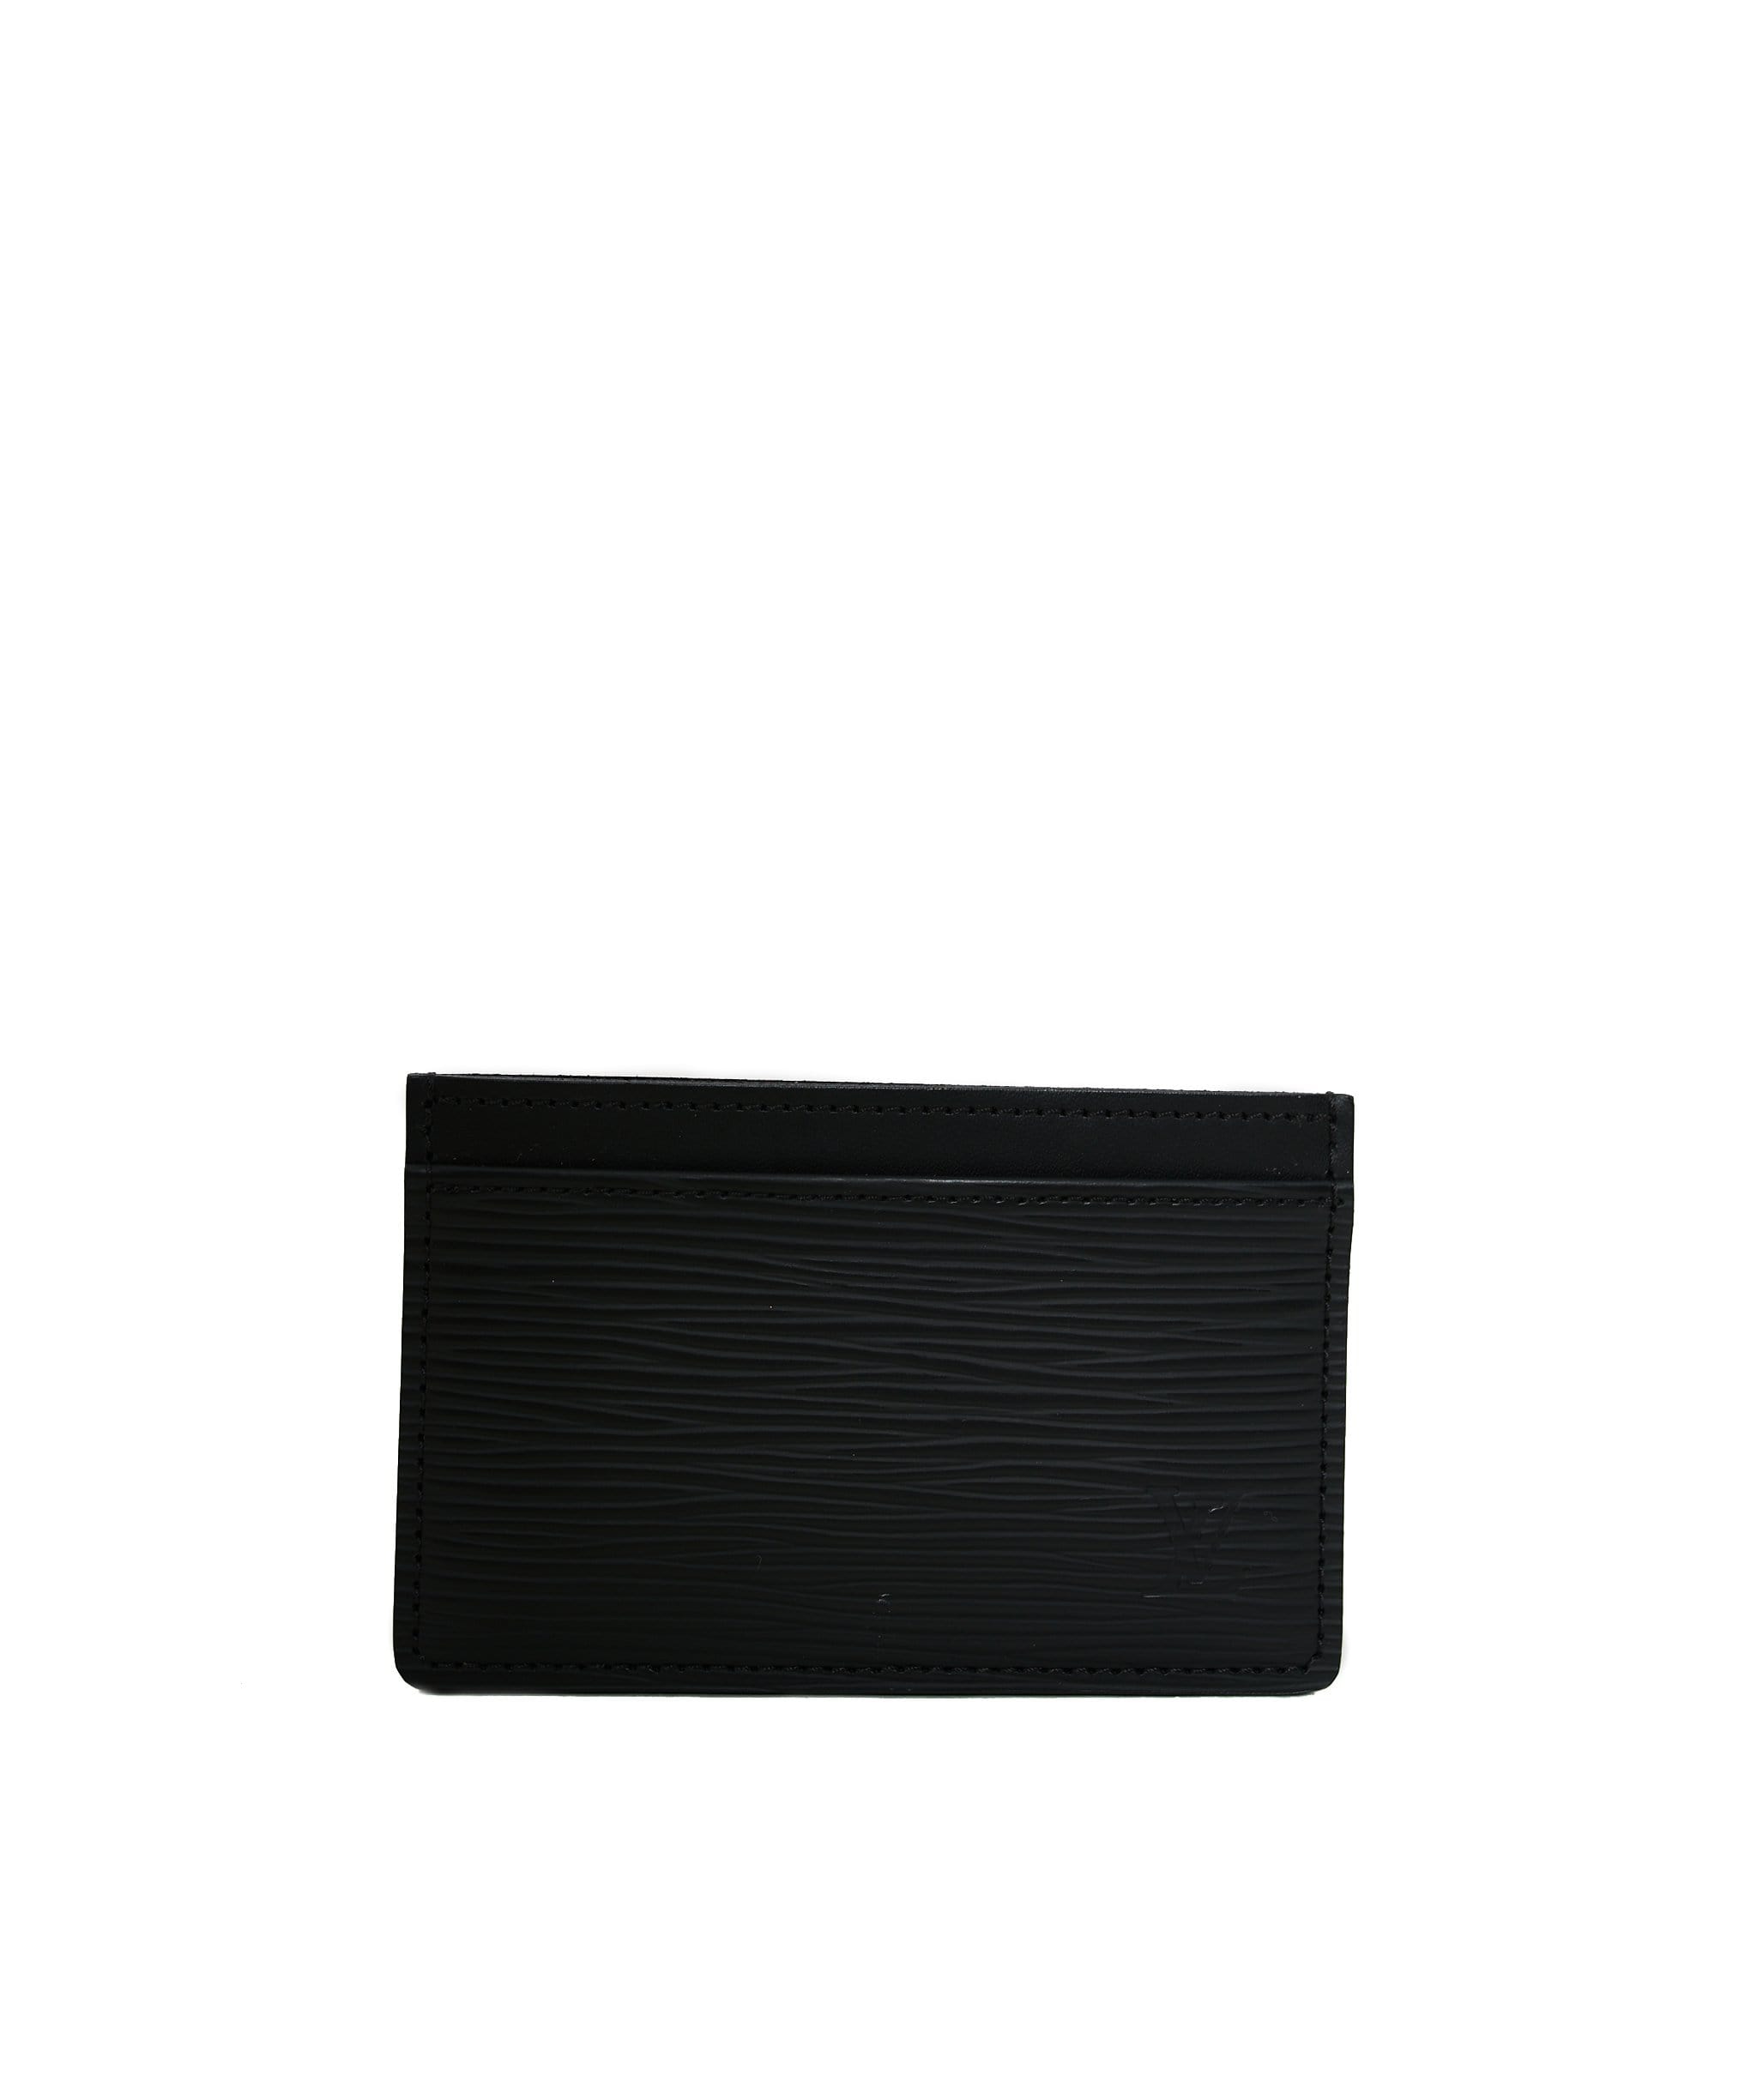 Louis Vuitton Louis Vuitton epi leather card holder black  - ADL1107